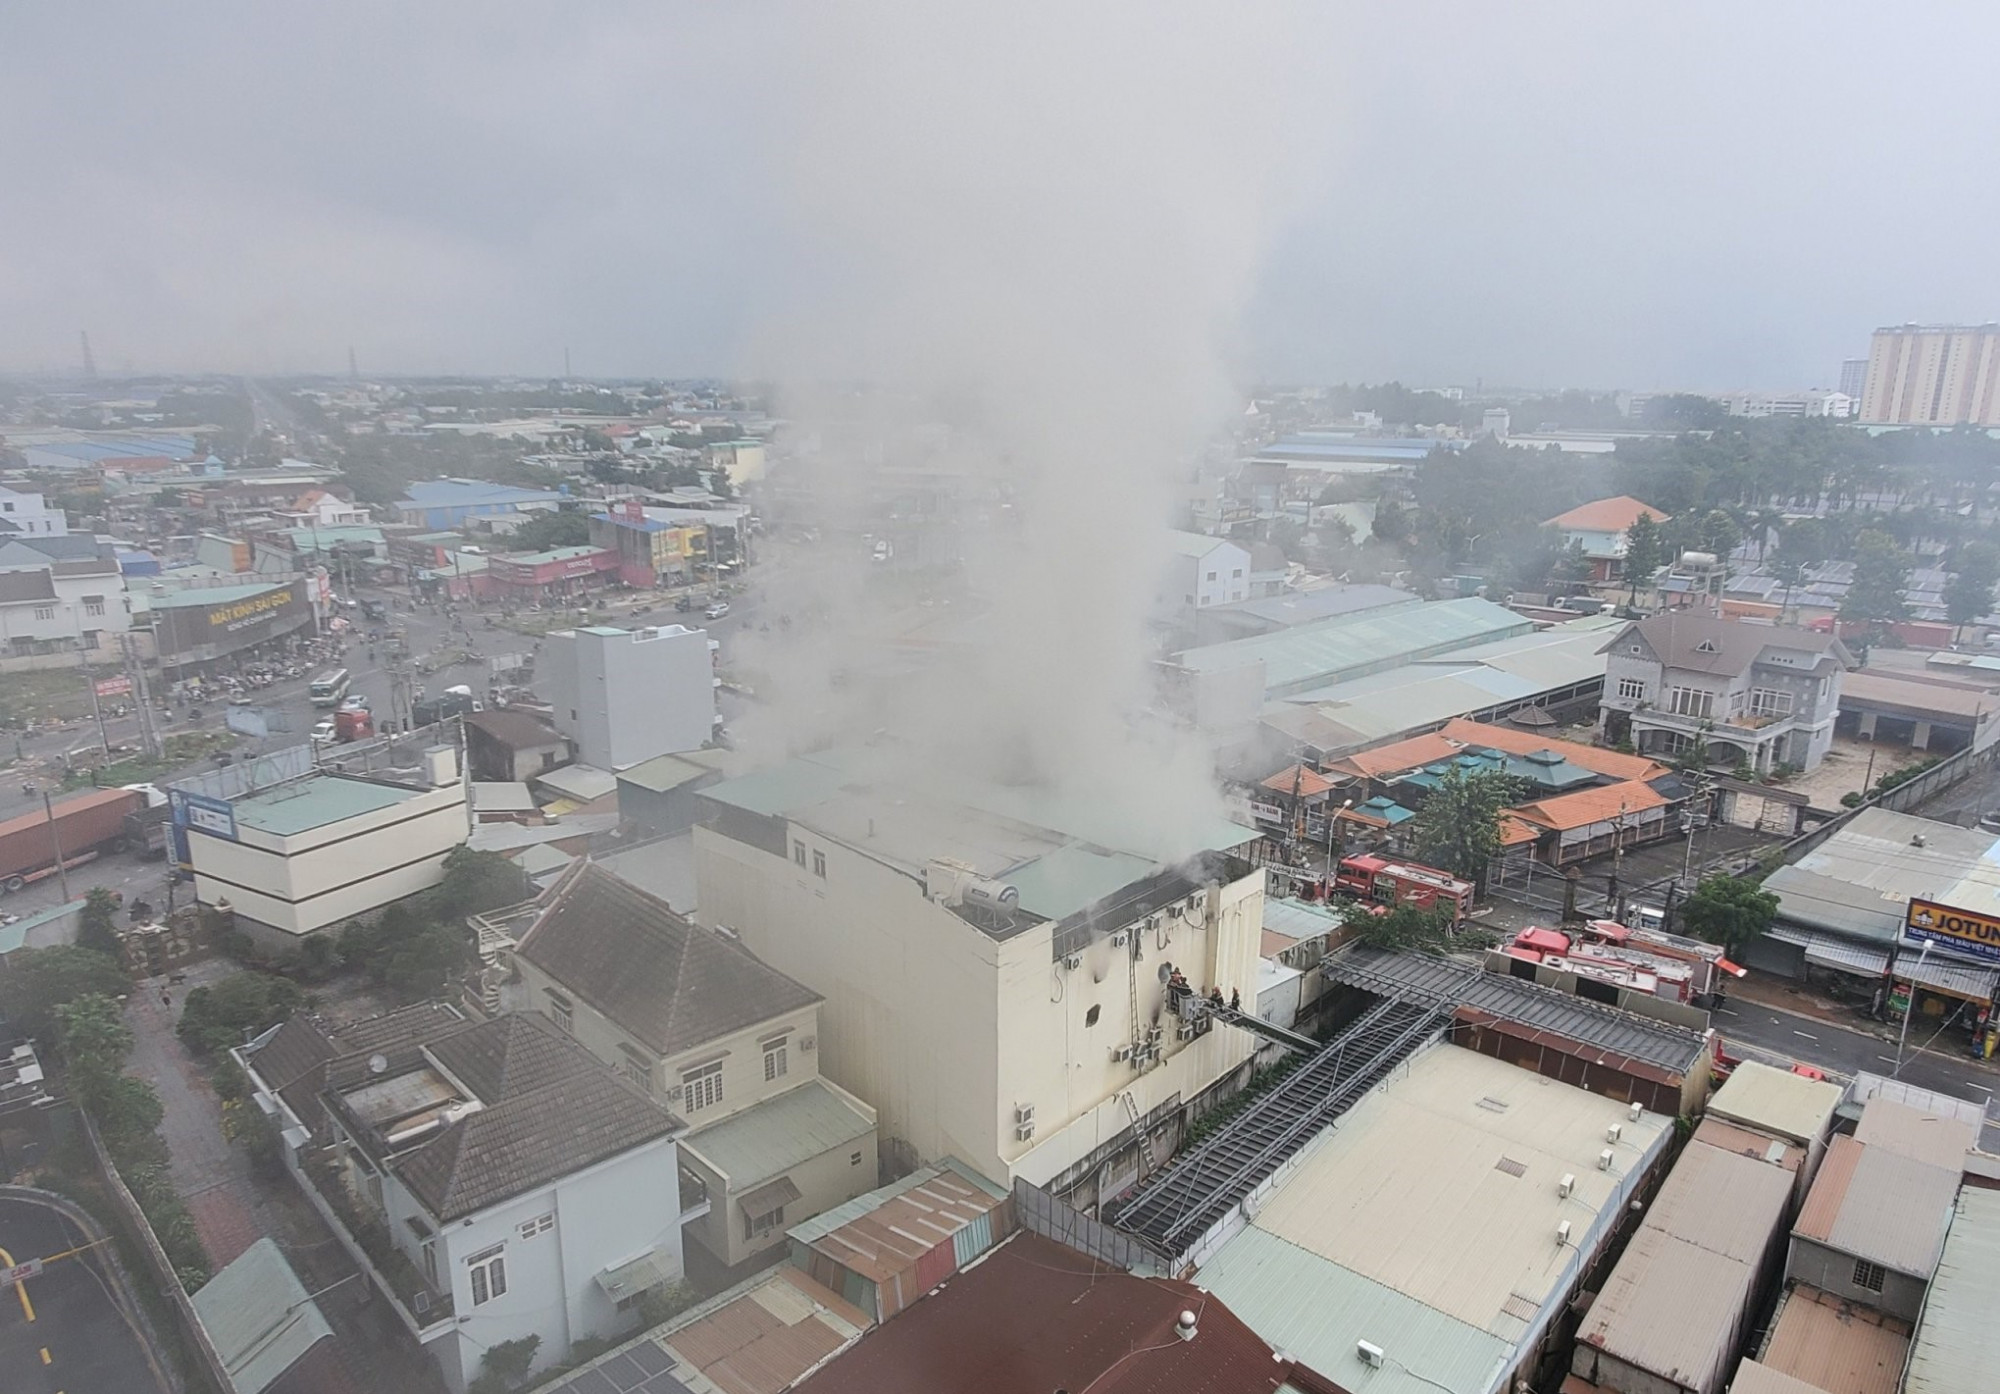 Quán karaoke An Phú - nơi xảy ra vụ hỏa hoạn khiến 23 người tử vong cho đến thời điểm hiện tại. Ảnh: Nhật Linh.